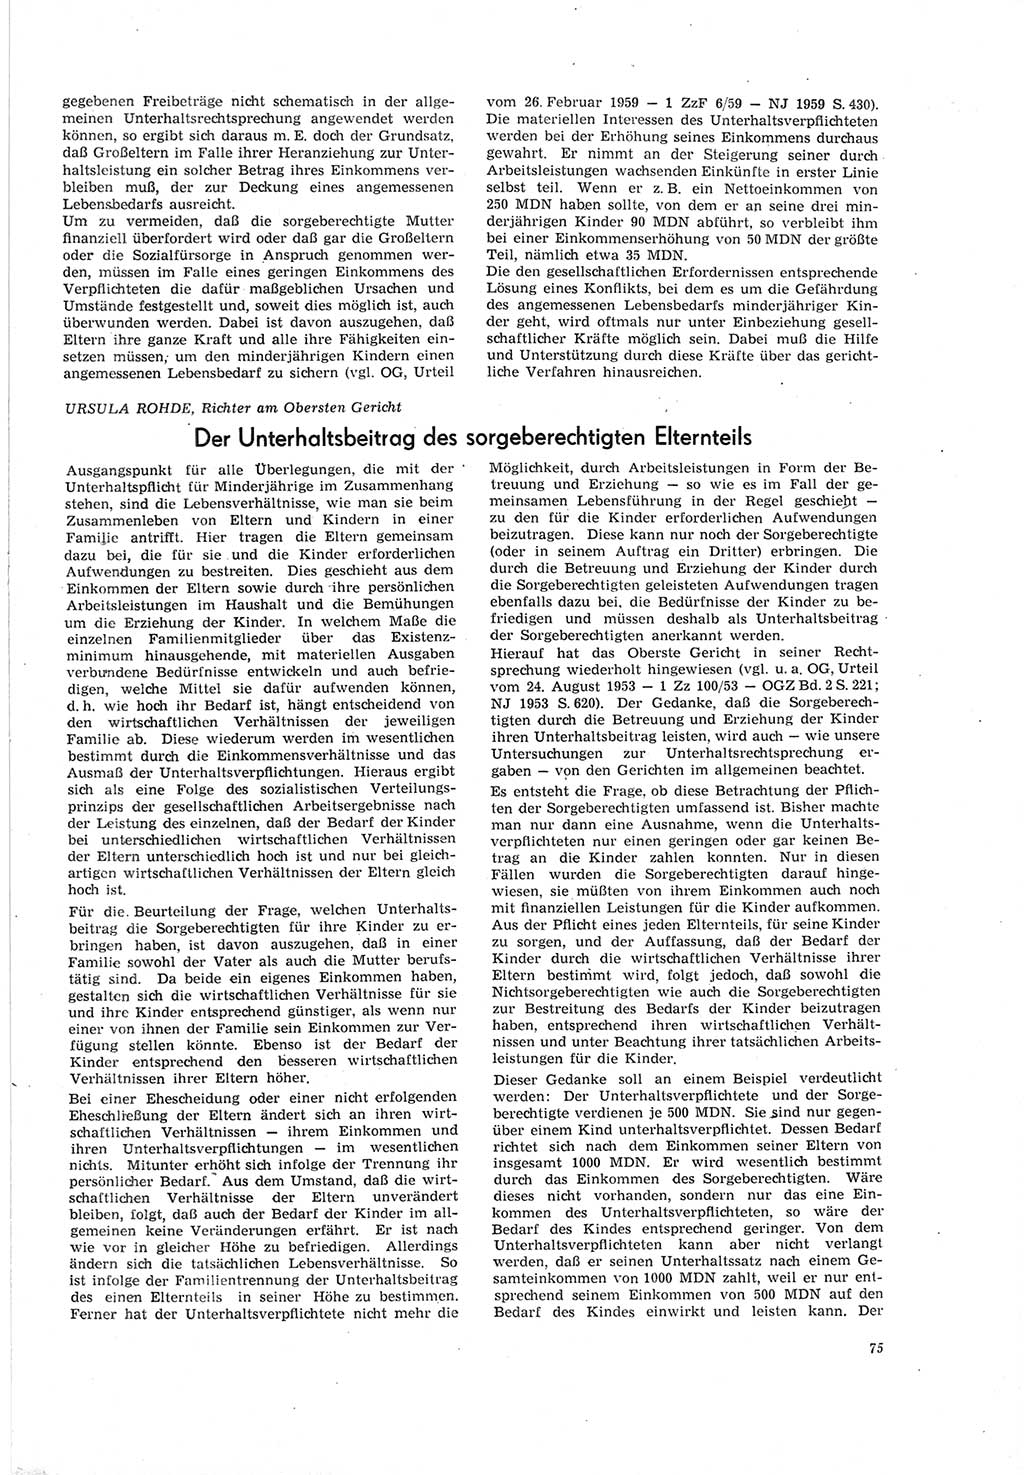 Neue Justiz (NJ), Zeitschrift für Recht und Rechtswissenschaft [Deutsche Demokratische Republik (DDR)], 19. Jahrgang 1965, Seite 75 (NJ DDR 1965, S. 75)